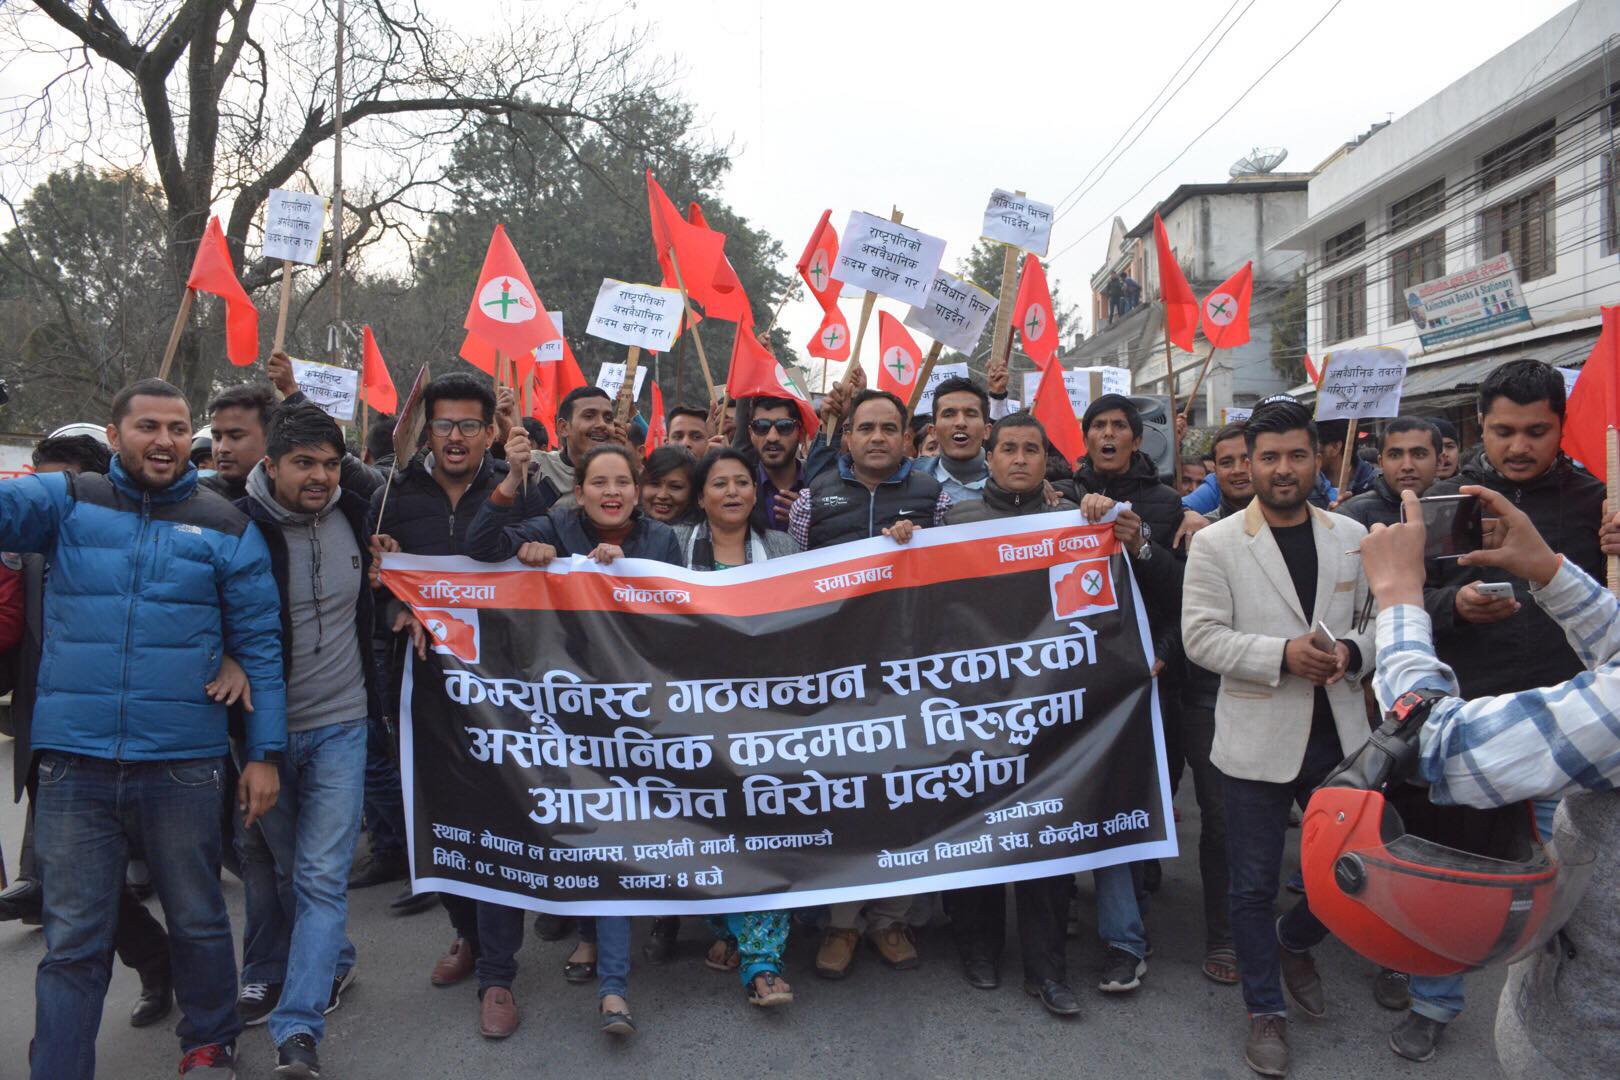 प्रदर्शन क्षेत्र तोकेकोमा नेवसंघको विरोध: काठमाडौं प्रमुखलाई ज्ञापनपत्र